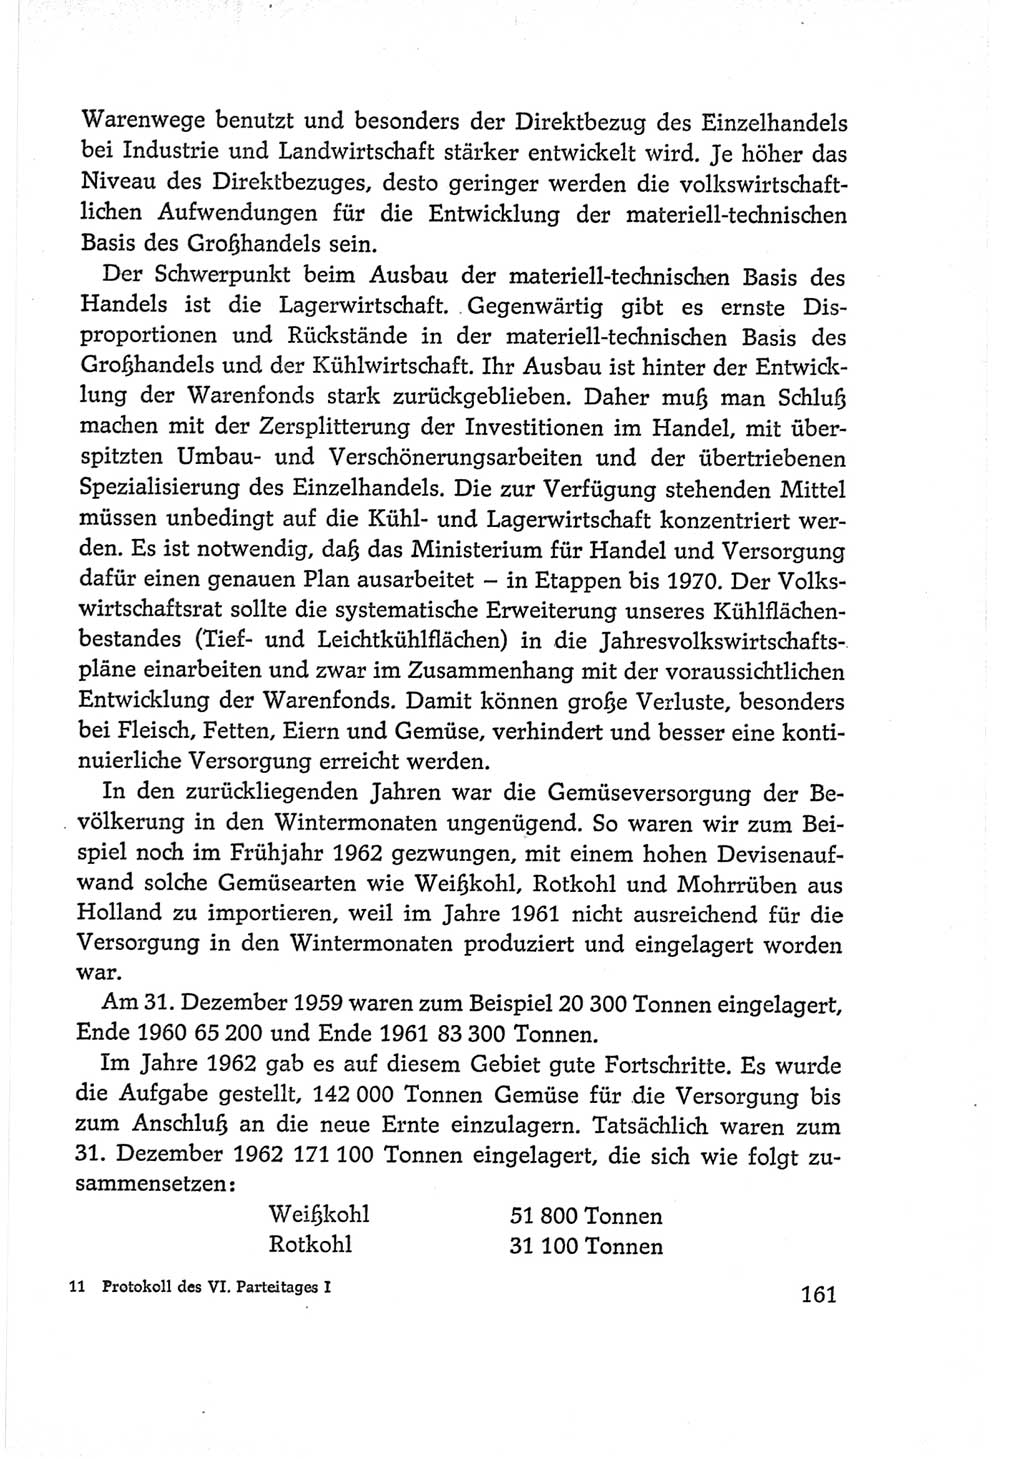 Protokoll der Verhandlungen des Ⅵ. Parteitages der Sozialistischen Einheitspartei Deutschlands (SED) [Deutsche Demokratische Republik (DDR)] 1963, Band Ⅰ, Seite 161 (Prot. Verh. Ⅵ. PT SED DDR 1963, Bd. Ⅰ, S. 161)